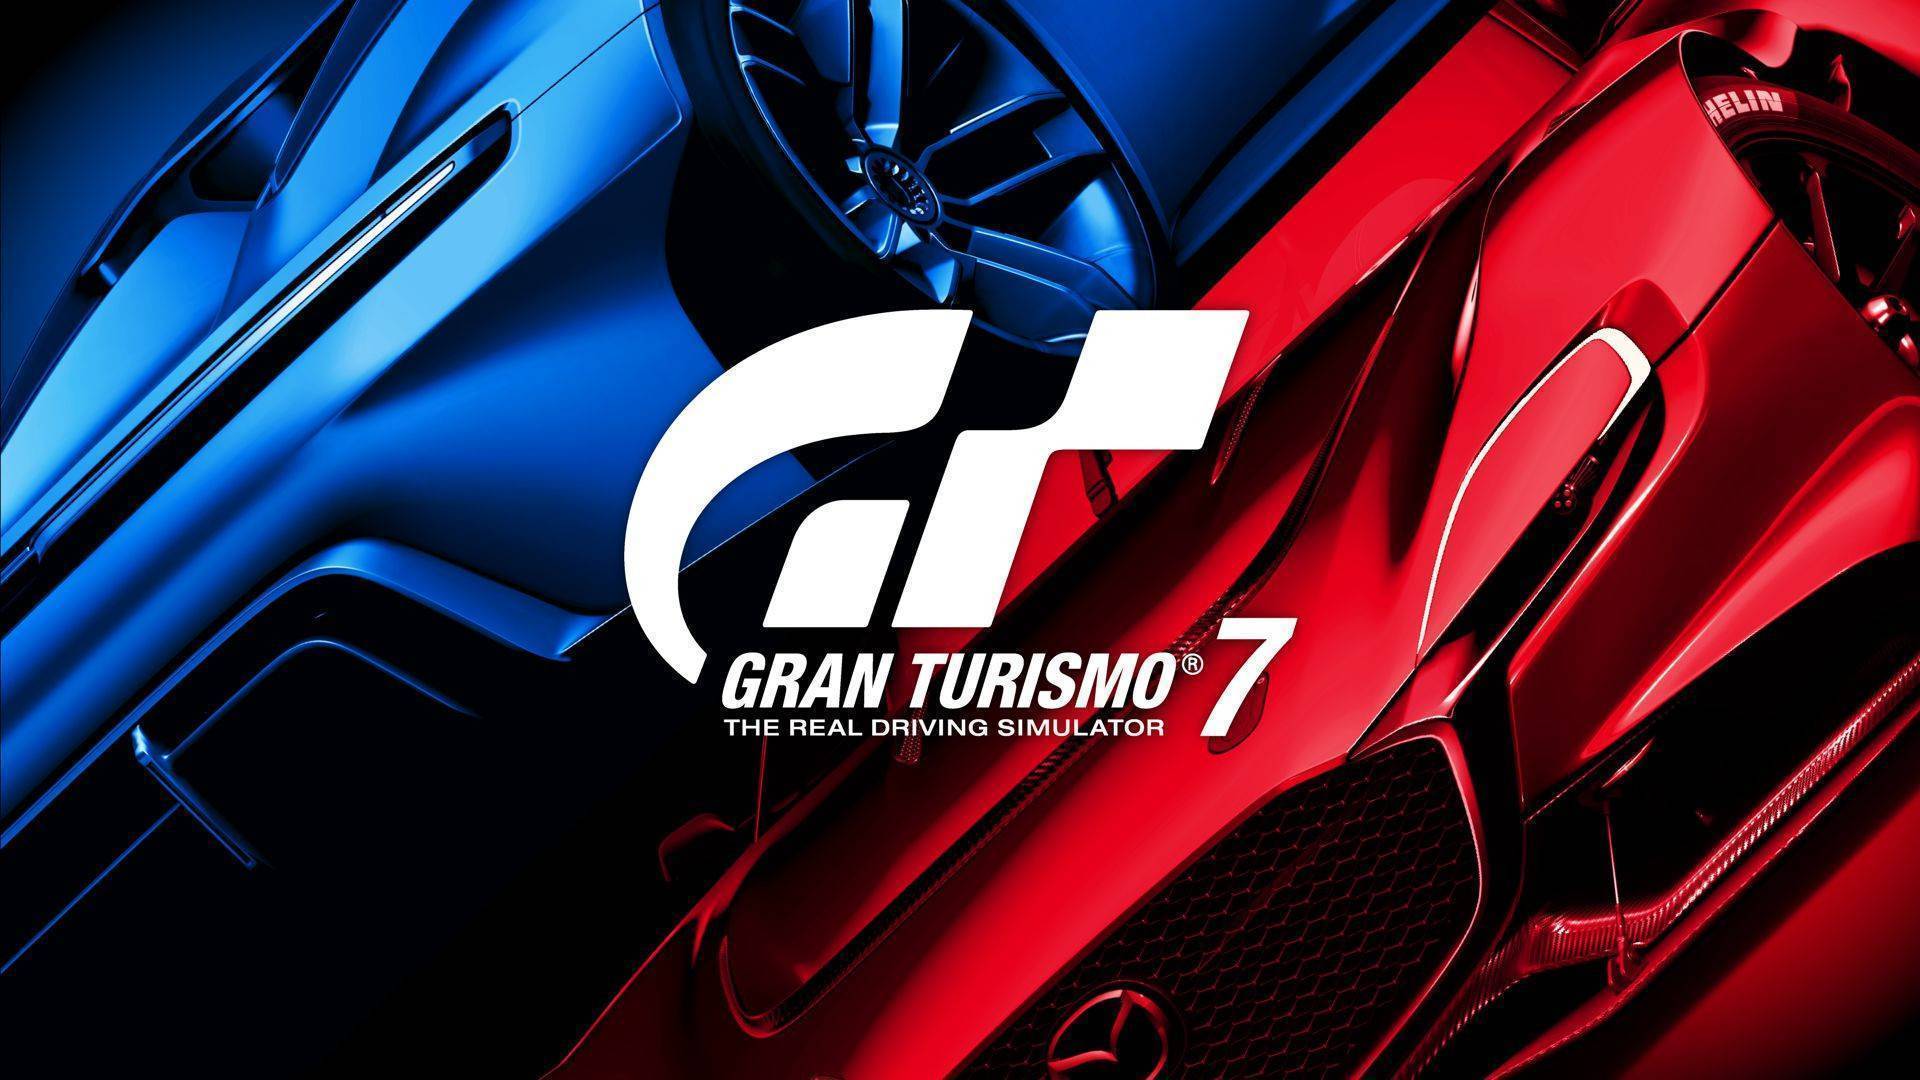 Gran Turismo 7 (PS5) cheap - Price of $25.46